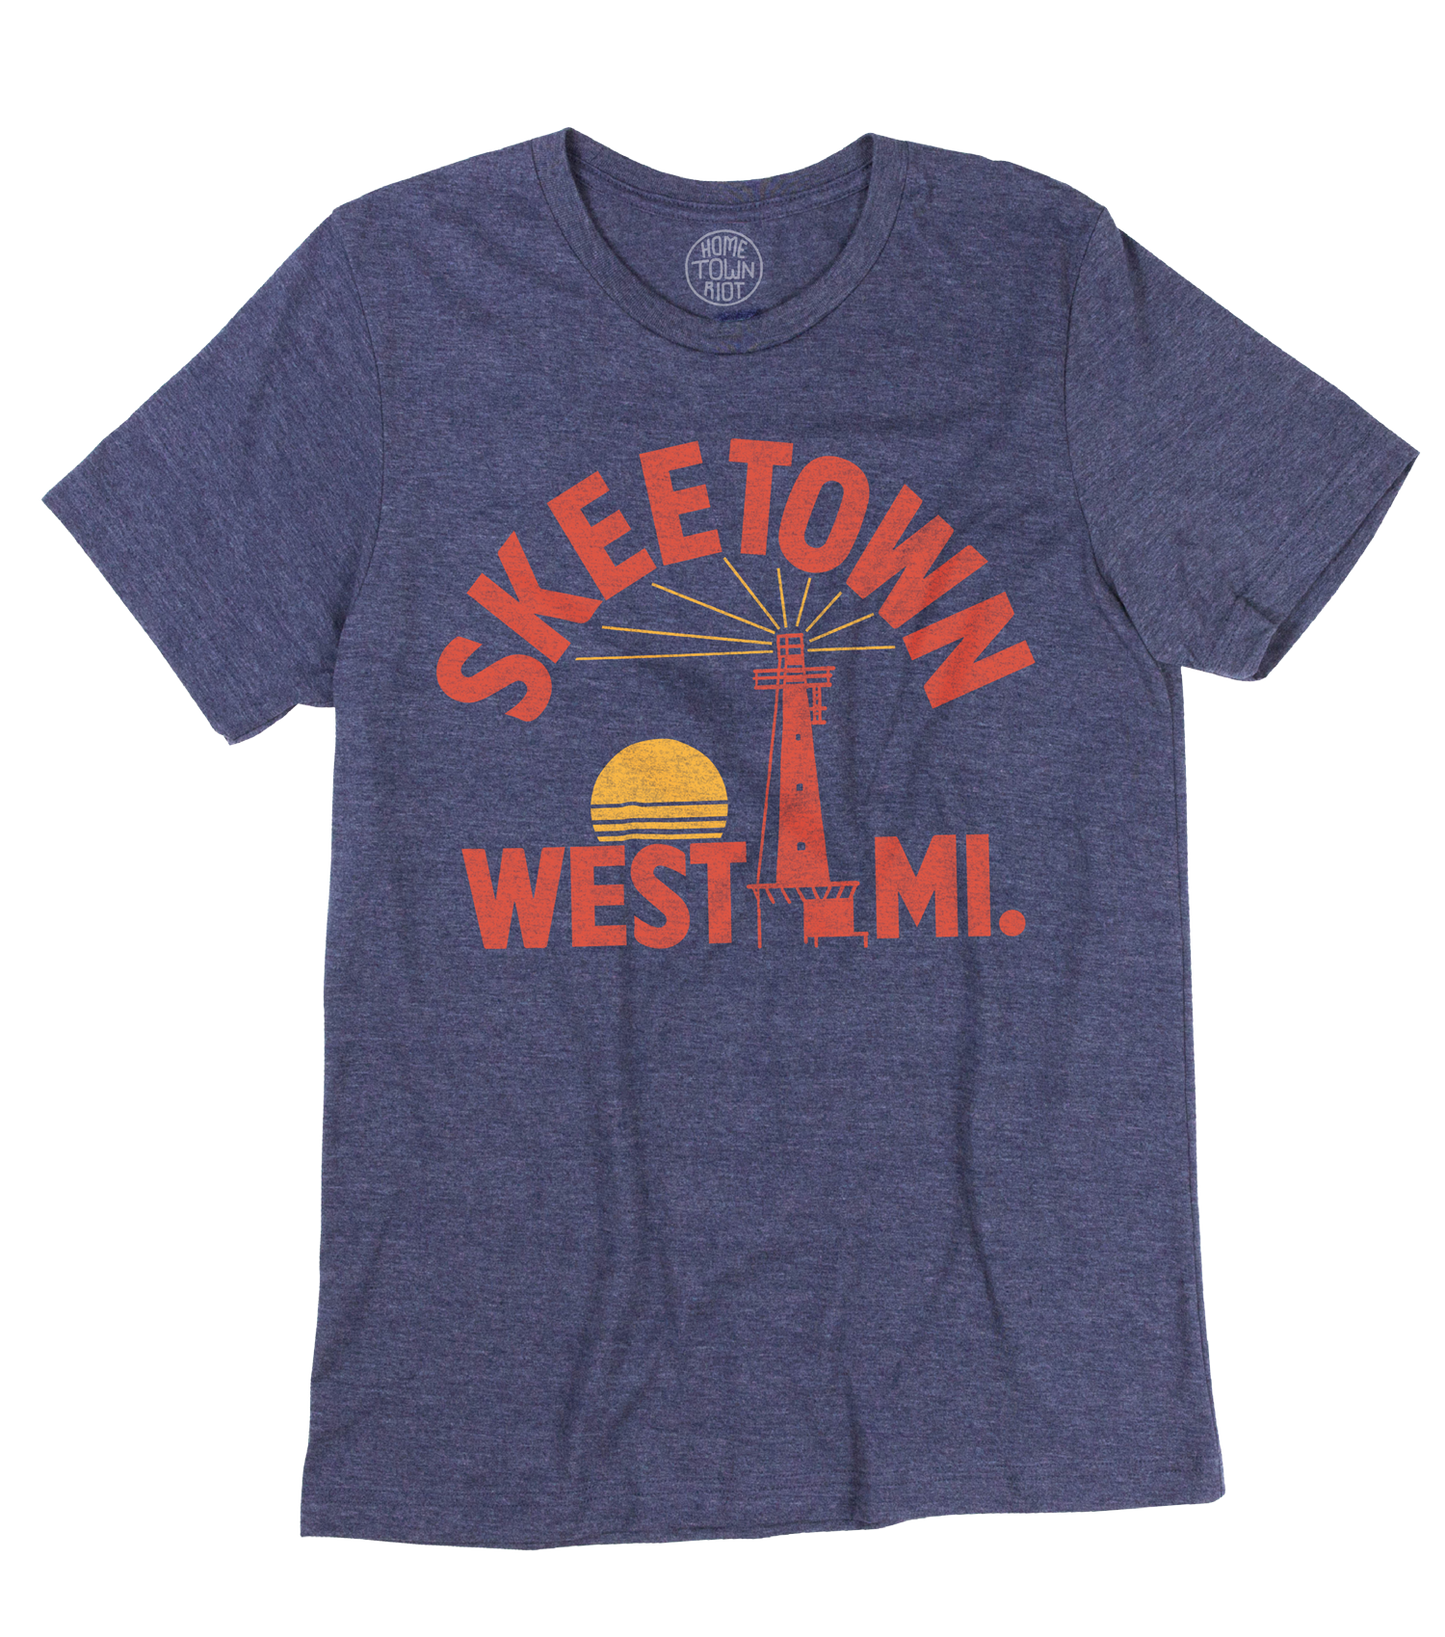 Skeetown West Michigan Shirt